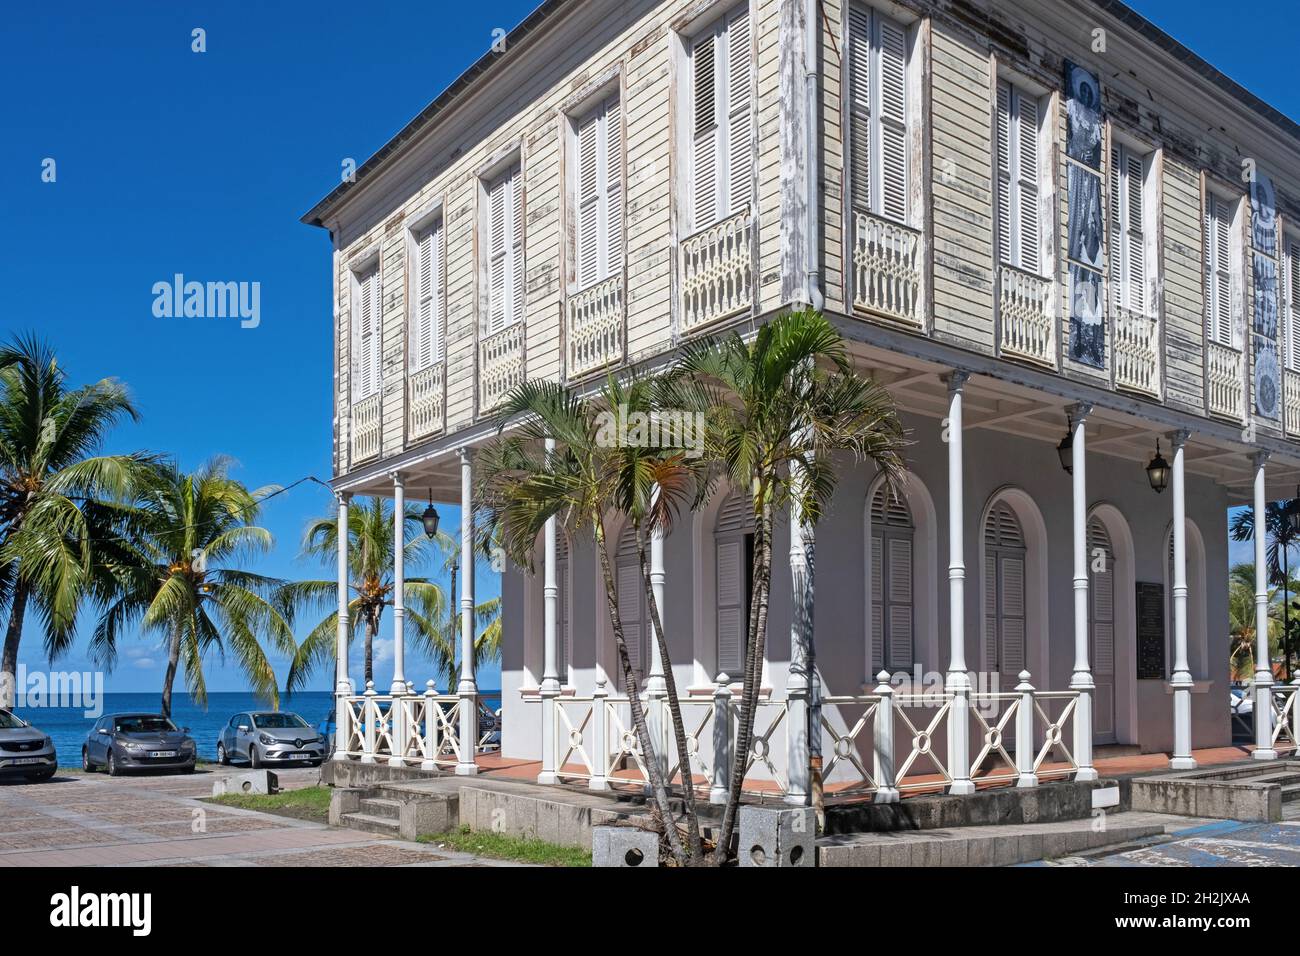 Ex Camera di Commercio in stile coloniale francese a Saint-Pierre, prima colonia francese permanente sull'isola della Martinica nel Mar dei Caraibi Foto Stock